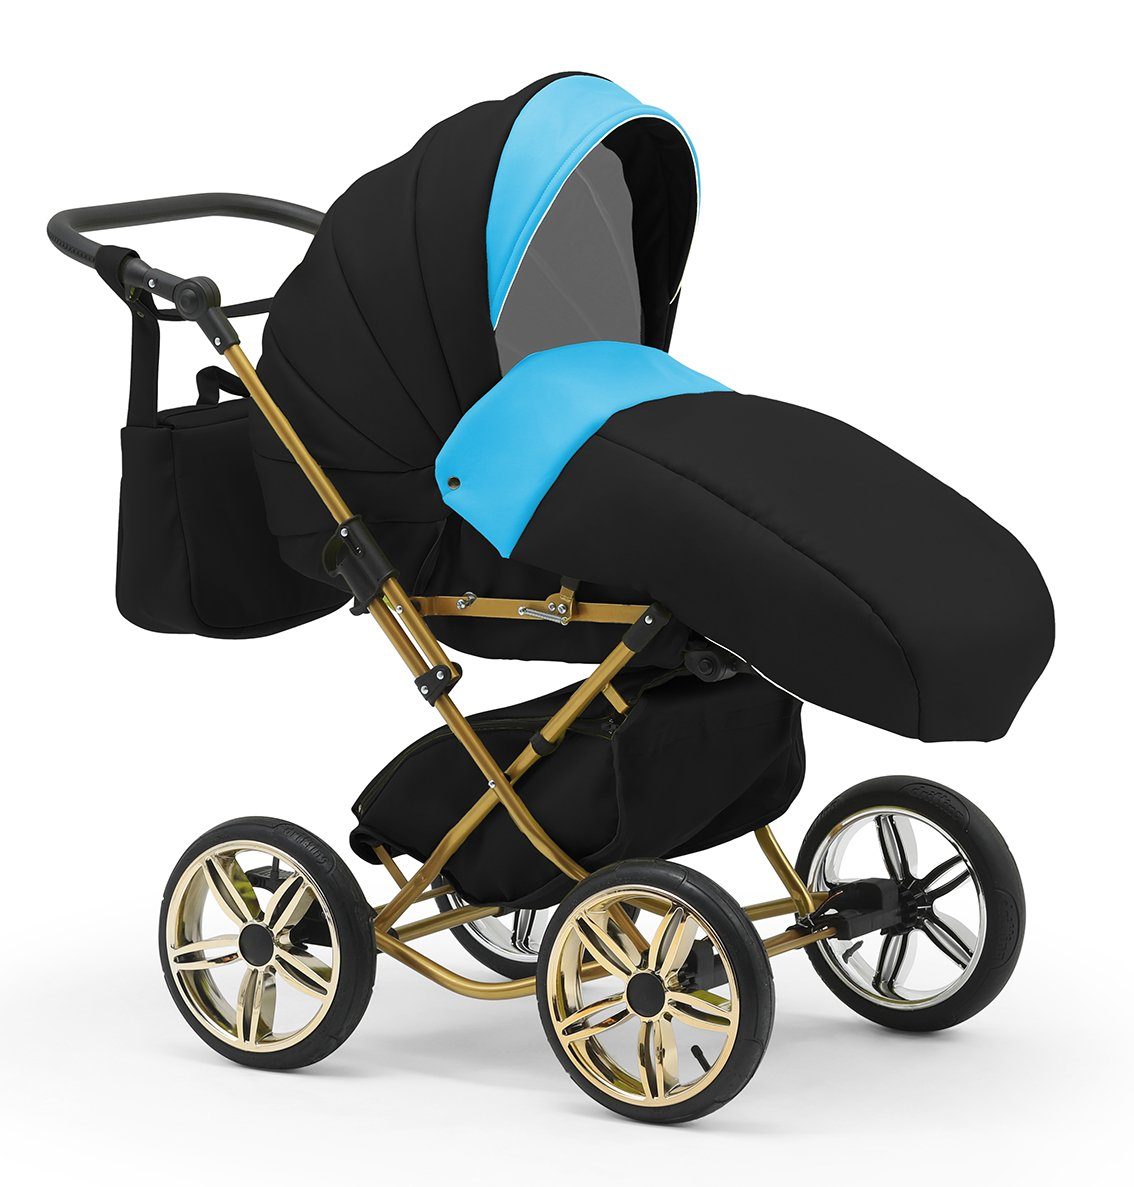 3 Autositz 13 Sorento Designs - in babies-on-wheels 10 inkl. Kombi-Kinderwagen Teile in 1 Türkis-Schwarz -